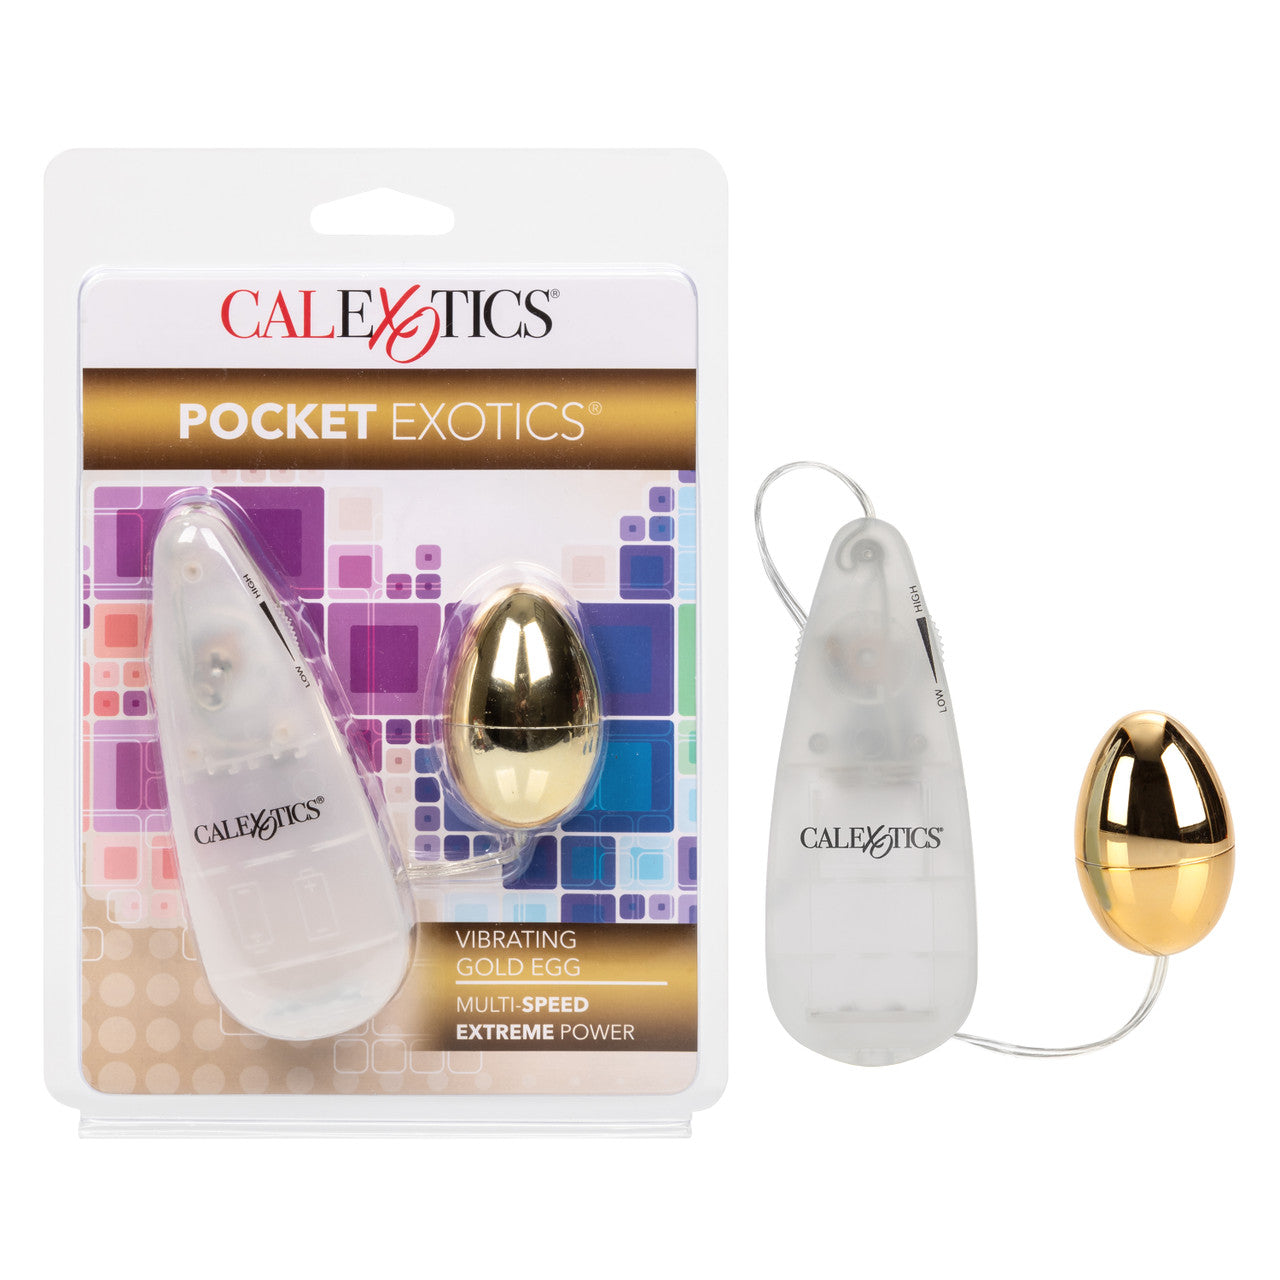 Pocket Exotics Vibrating Egg by Cal Exotics